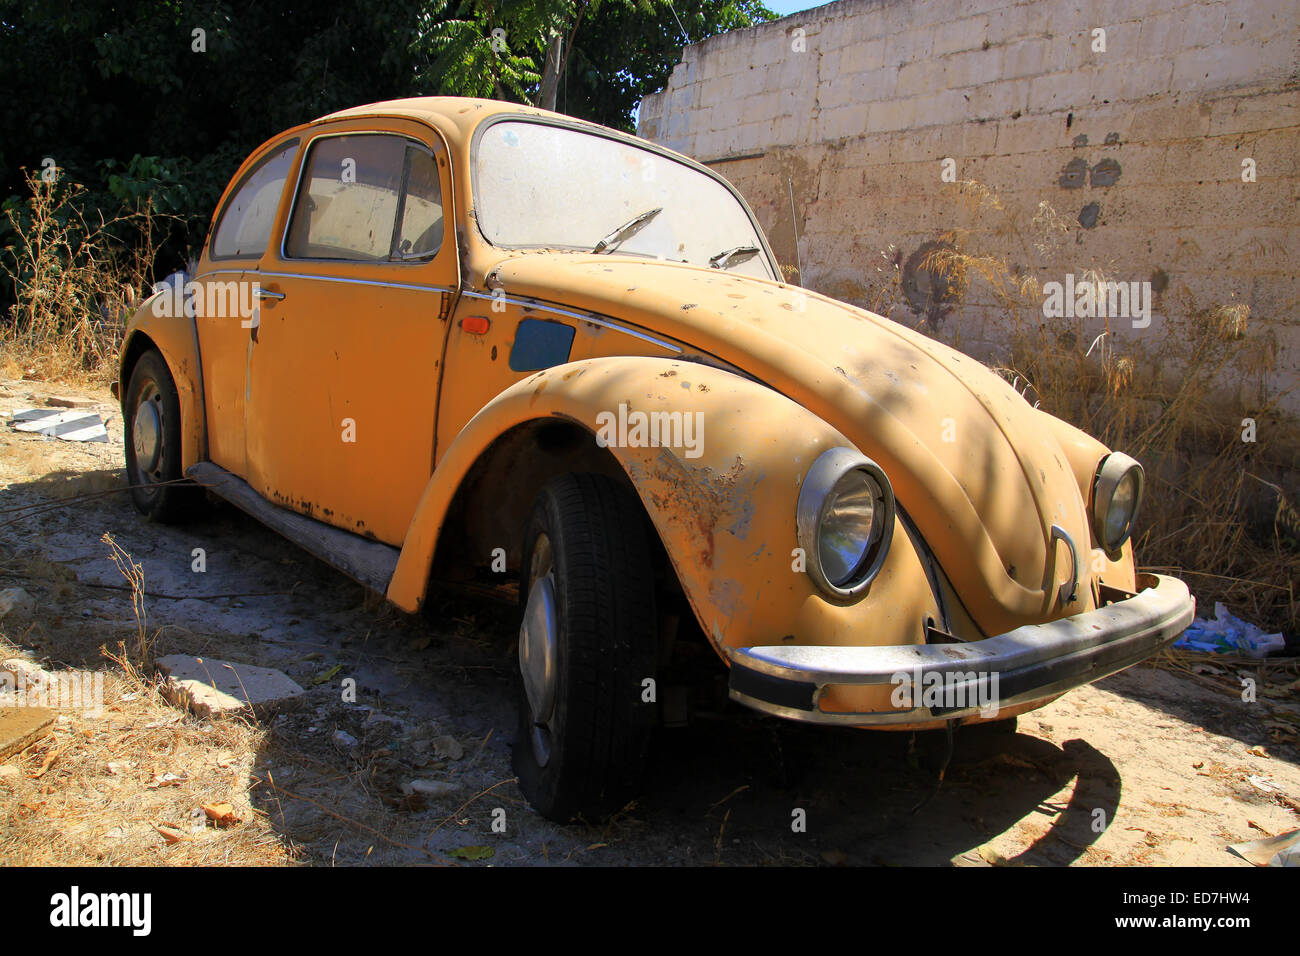 Un viejo coche amarillo está estacionado en un patio abandonado. Foto de stock